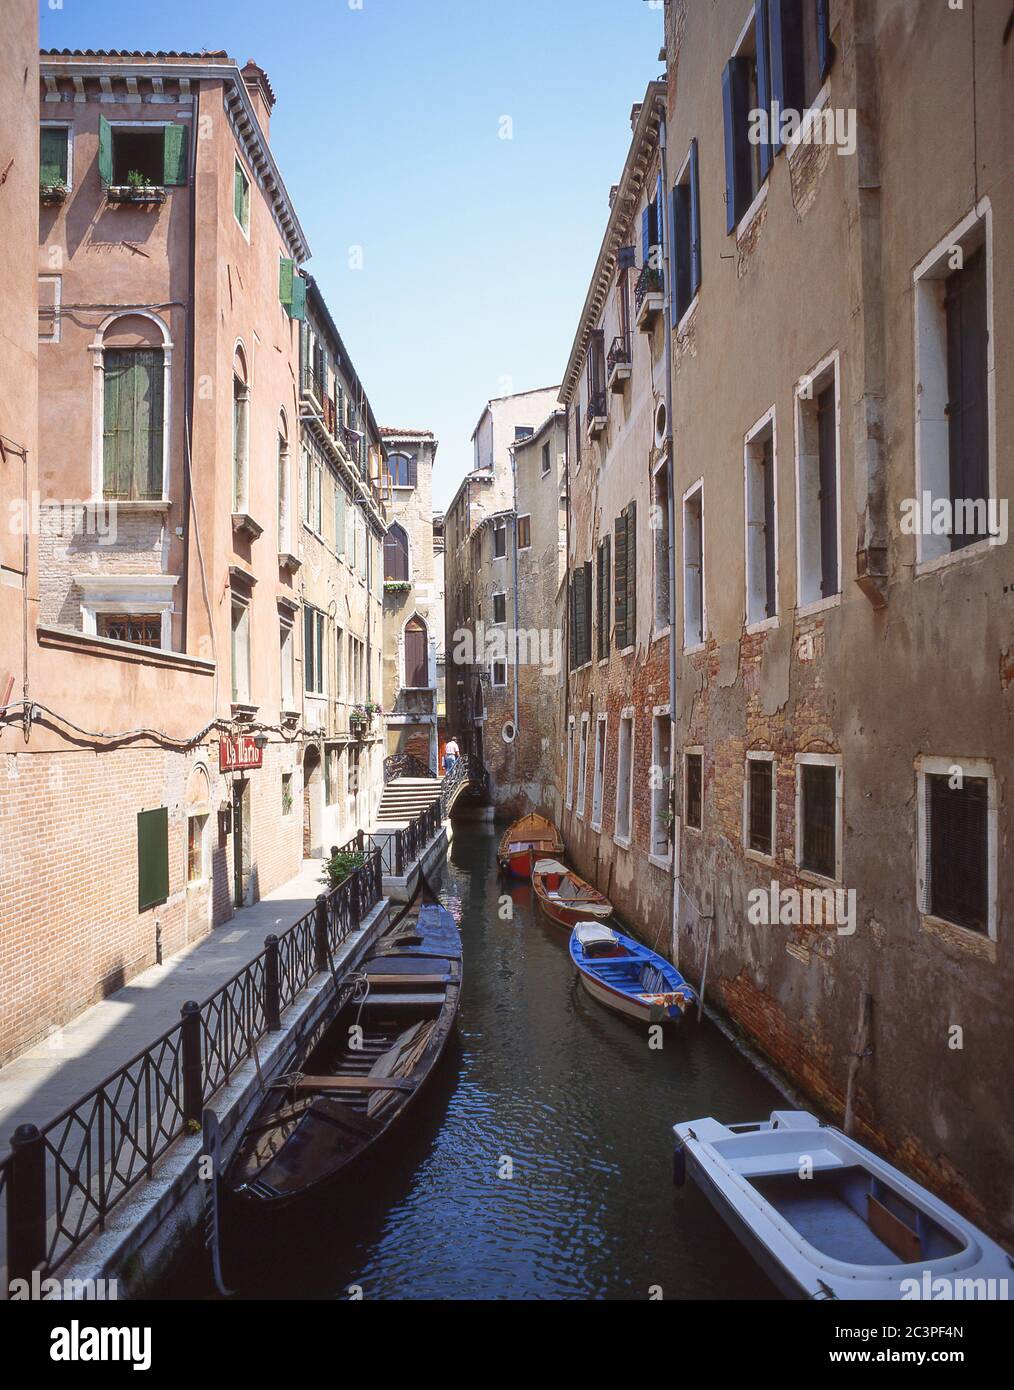 Canal étroit, Venise (Venezia), région de Vénétie, Italie Banque D'Images